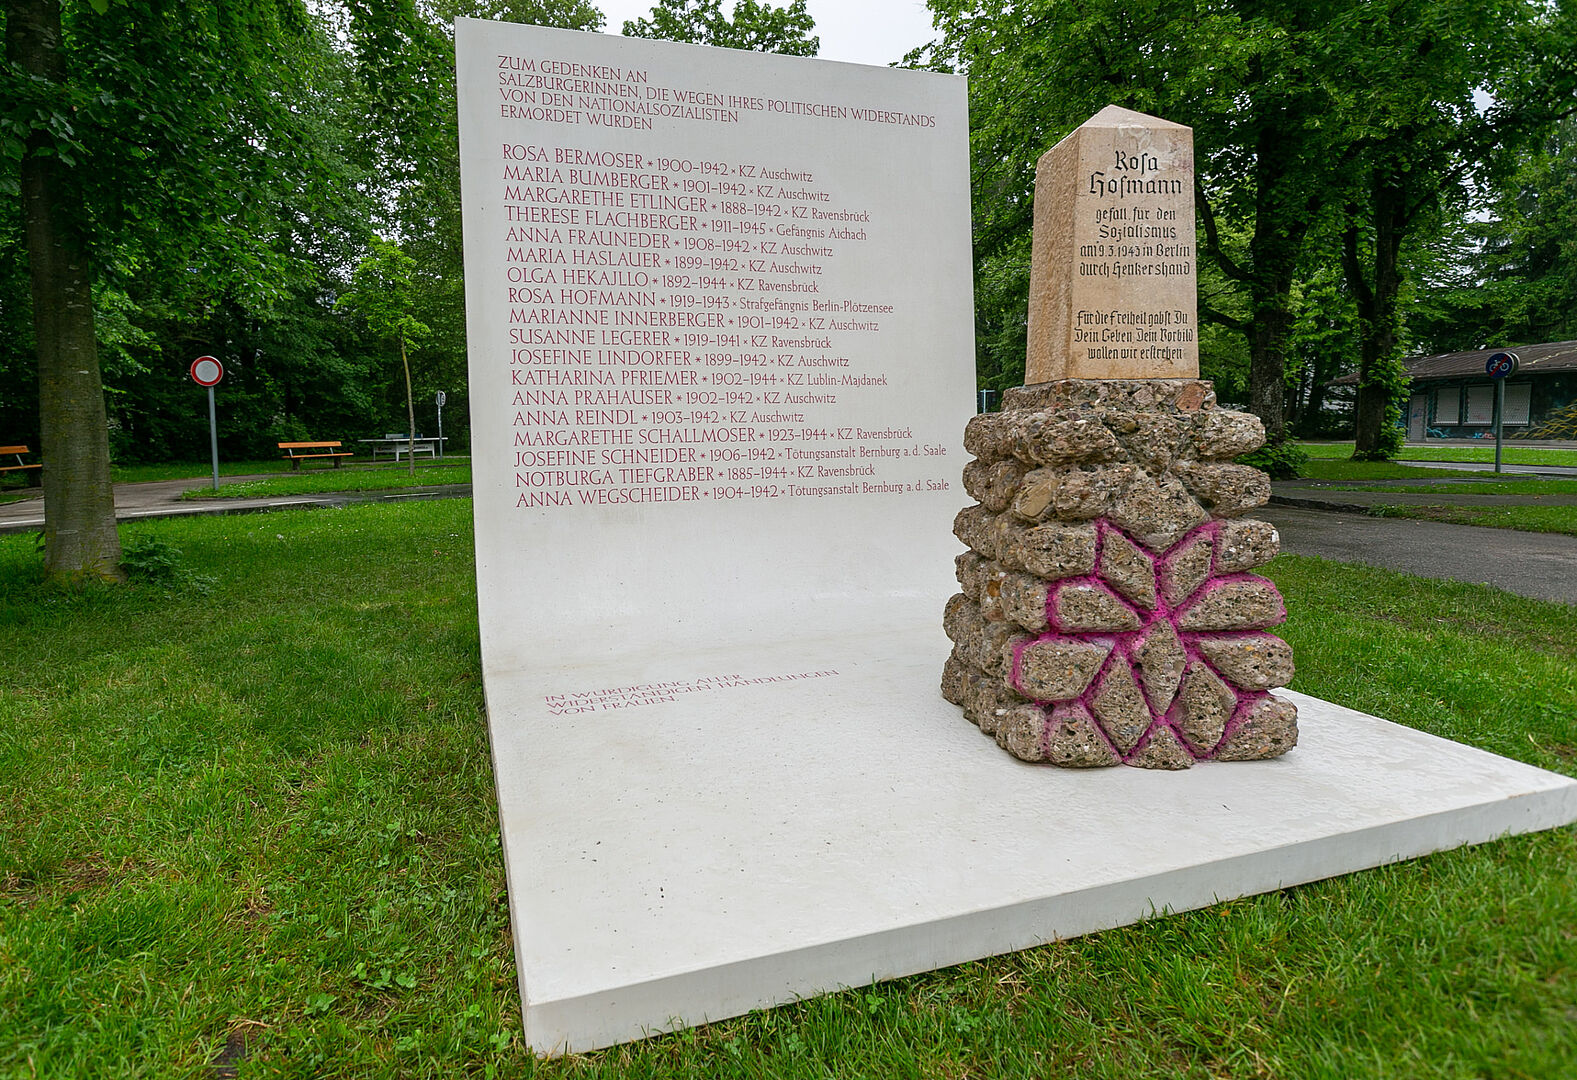 Memorial für Frauen, die dem NS Widerstand geleistet haben.